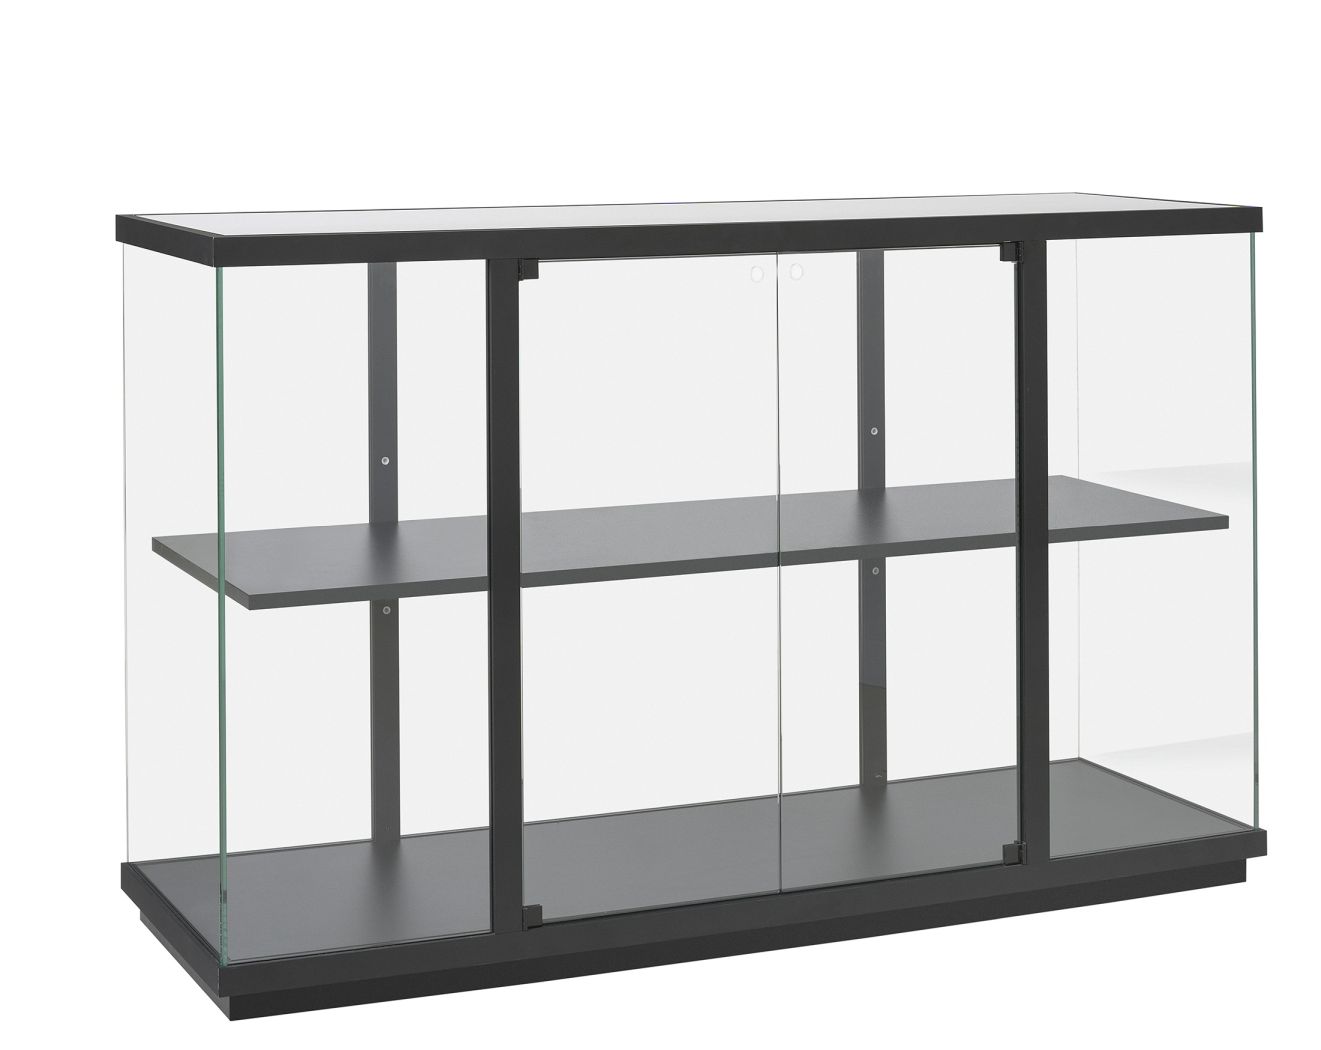 Stolp Low Display cabinet vanEsch  